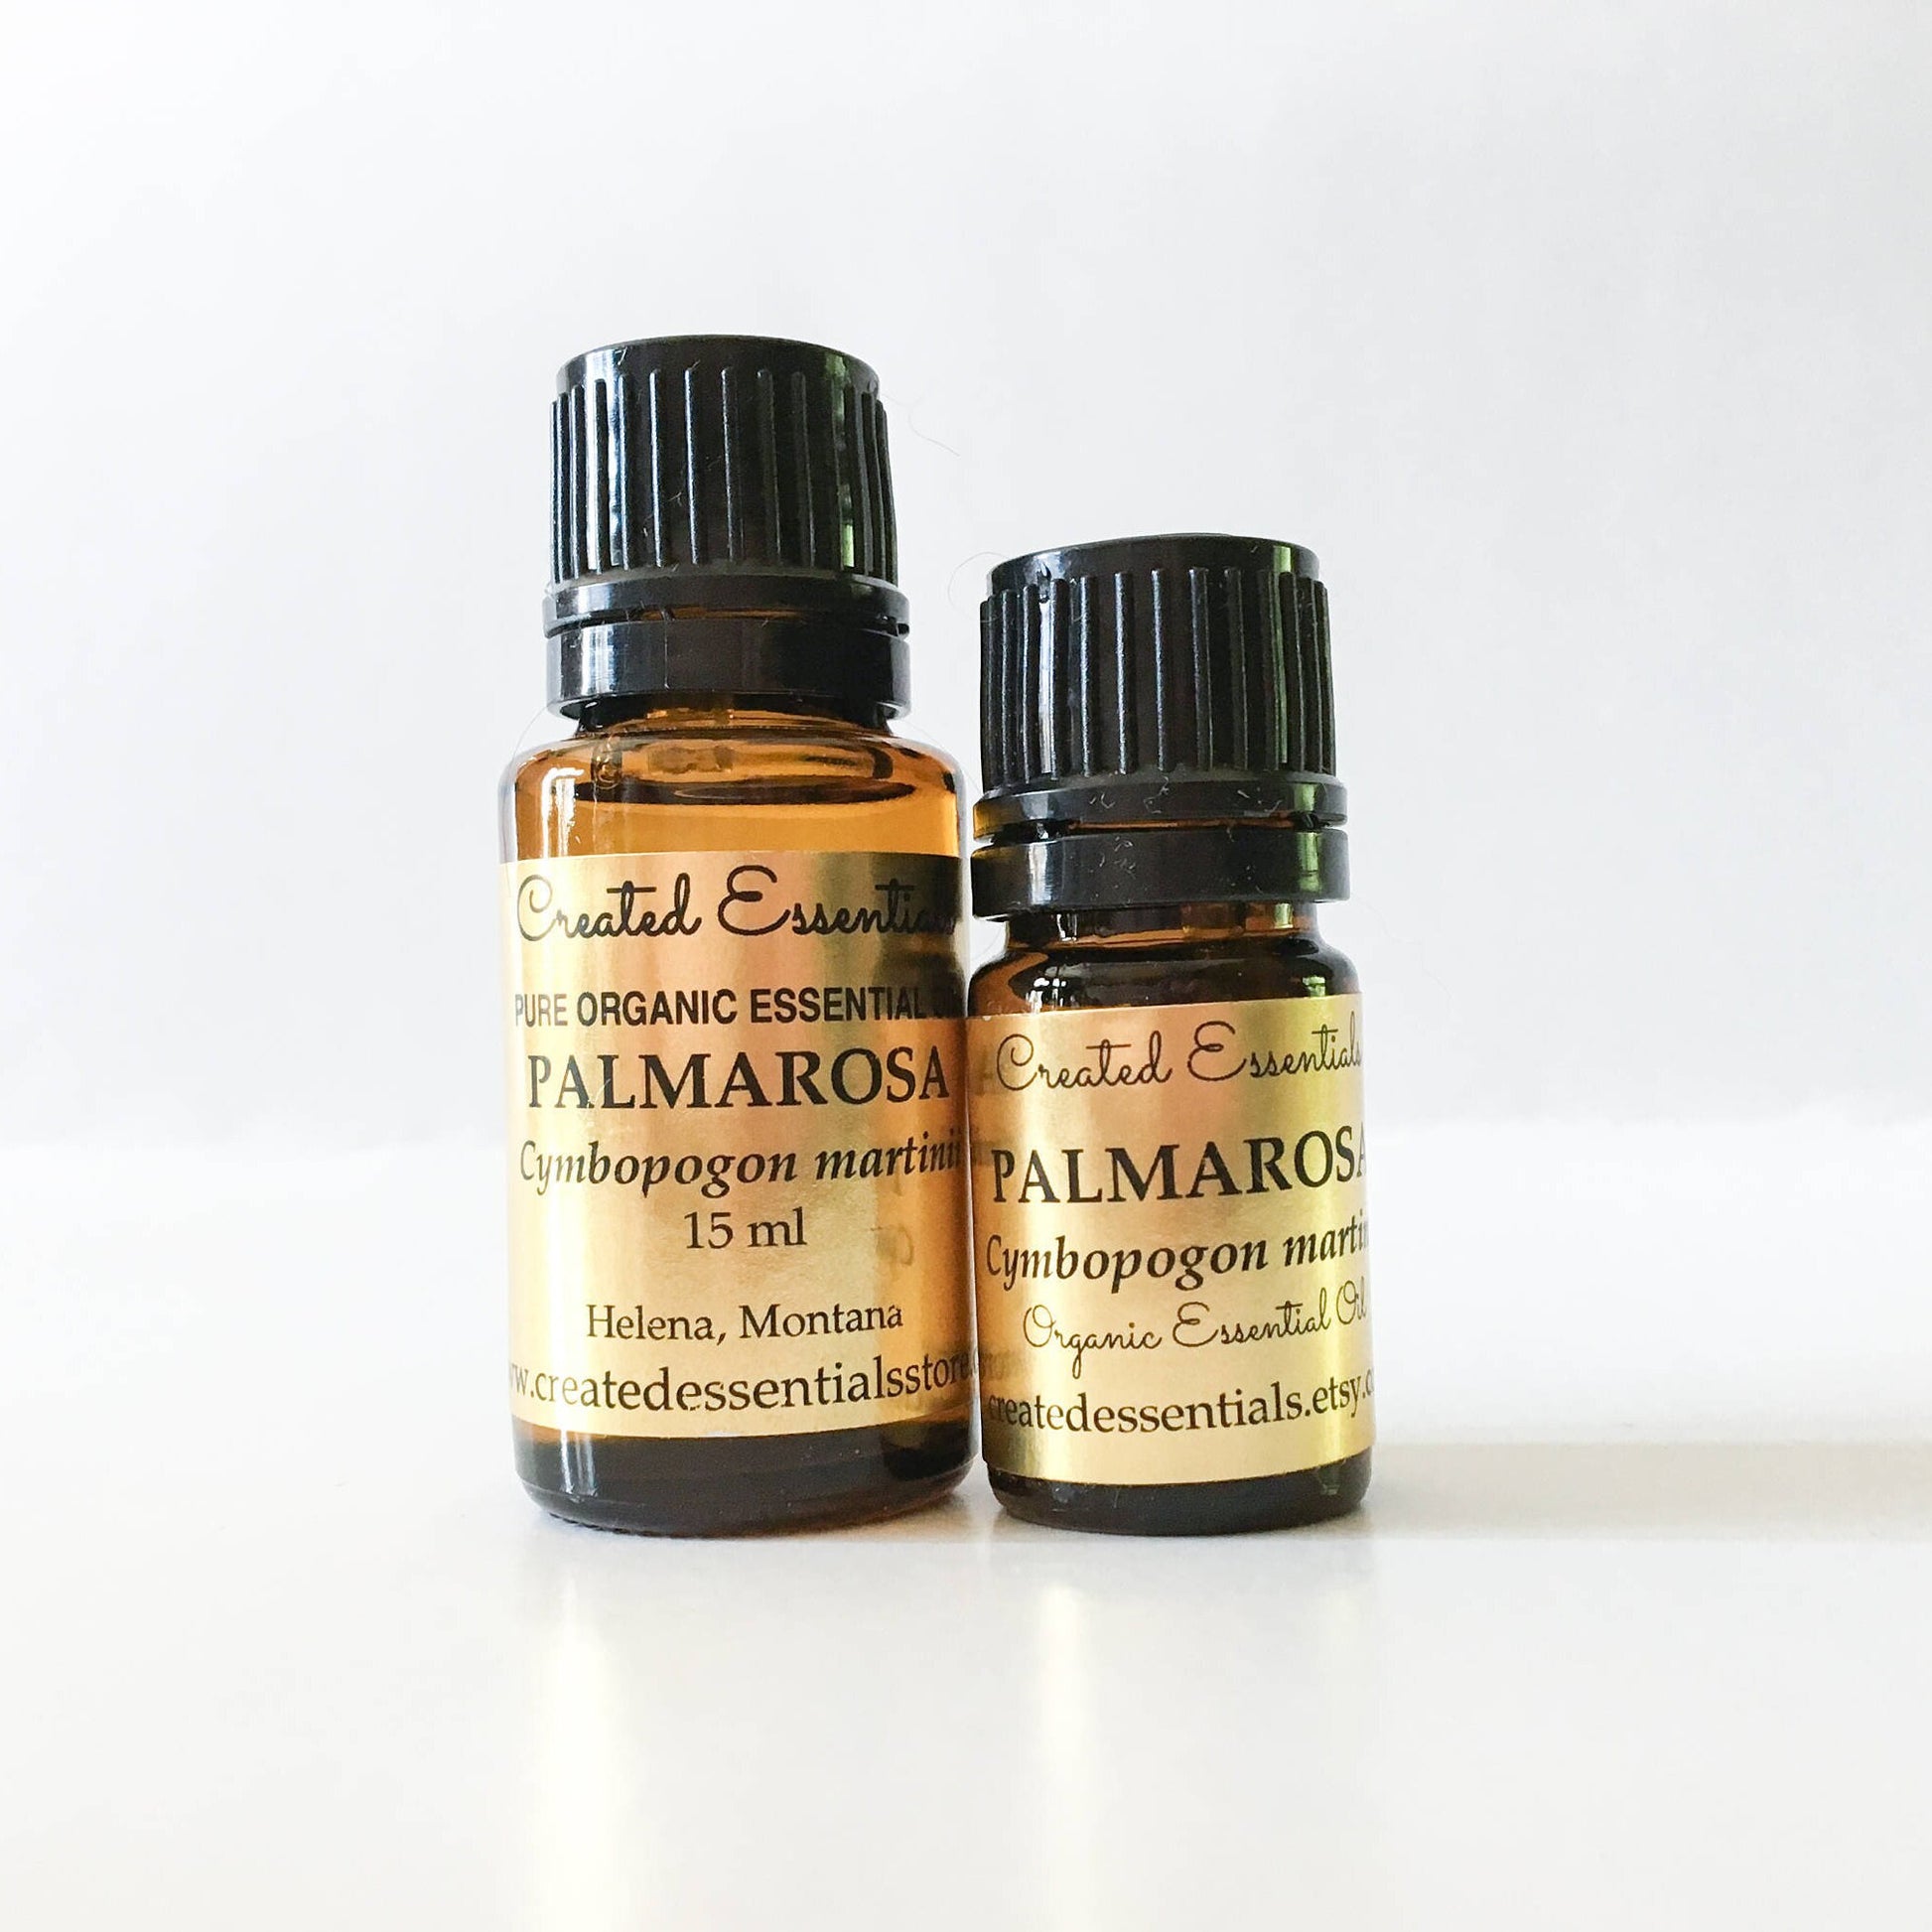 Palmarosa Essential Oil | Organic Essential Oil of Palmarosa | 100% Pure Essential Oil |Therapeutic Essential Oil of Palmarosa |Aromatherapy